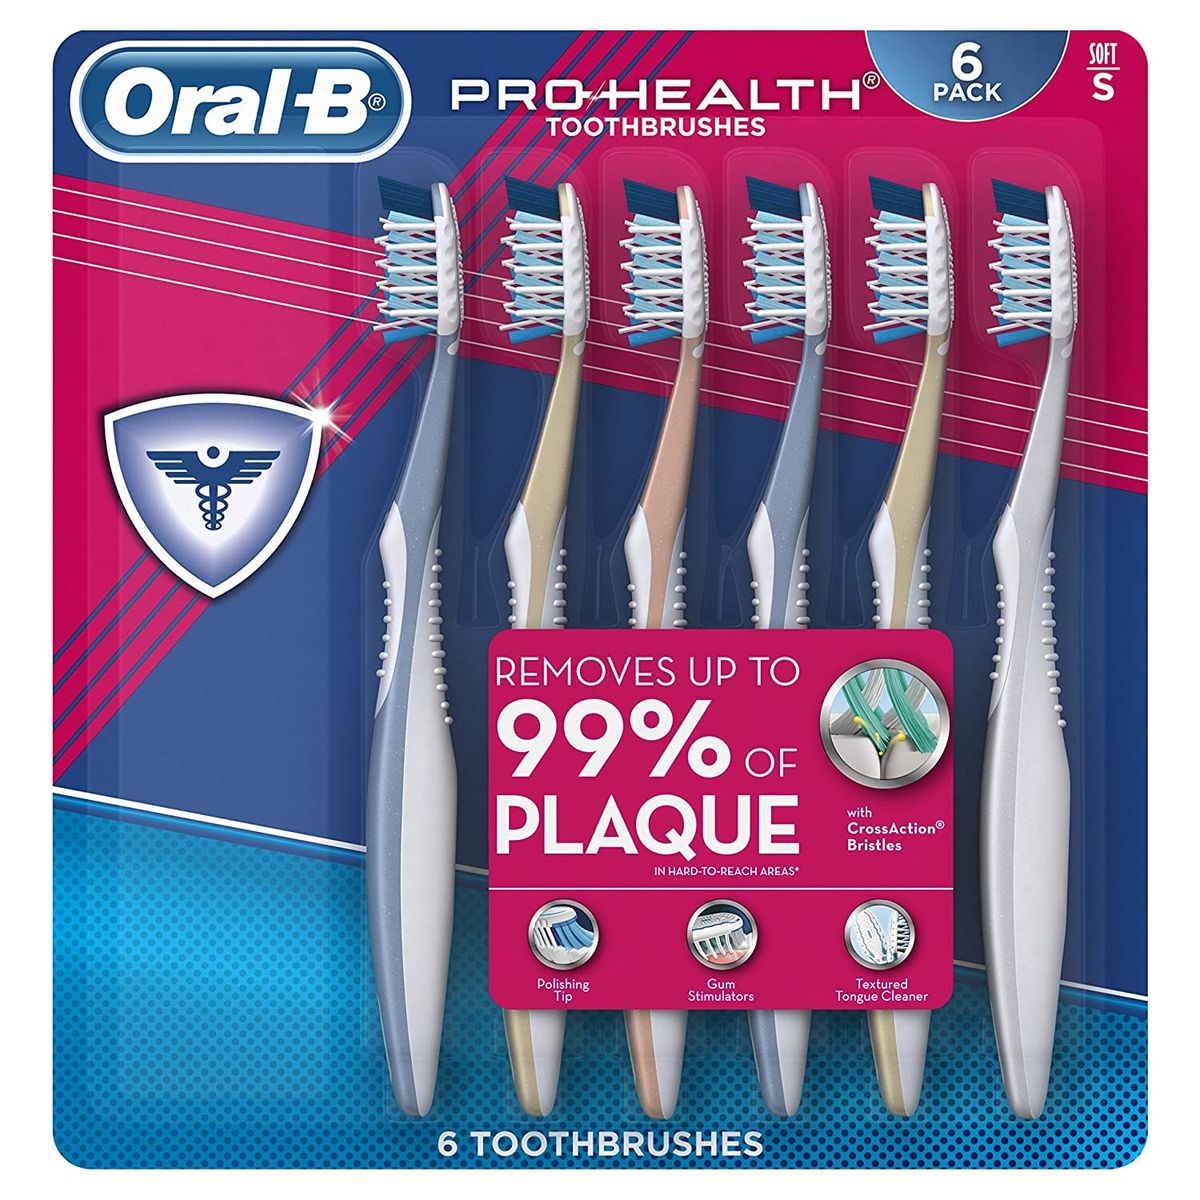 Les 6 meilleures brosses à dents manuelles pour un nettoyage en profondeur